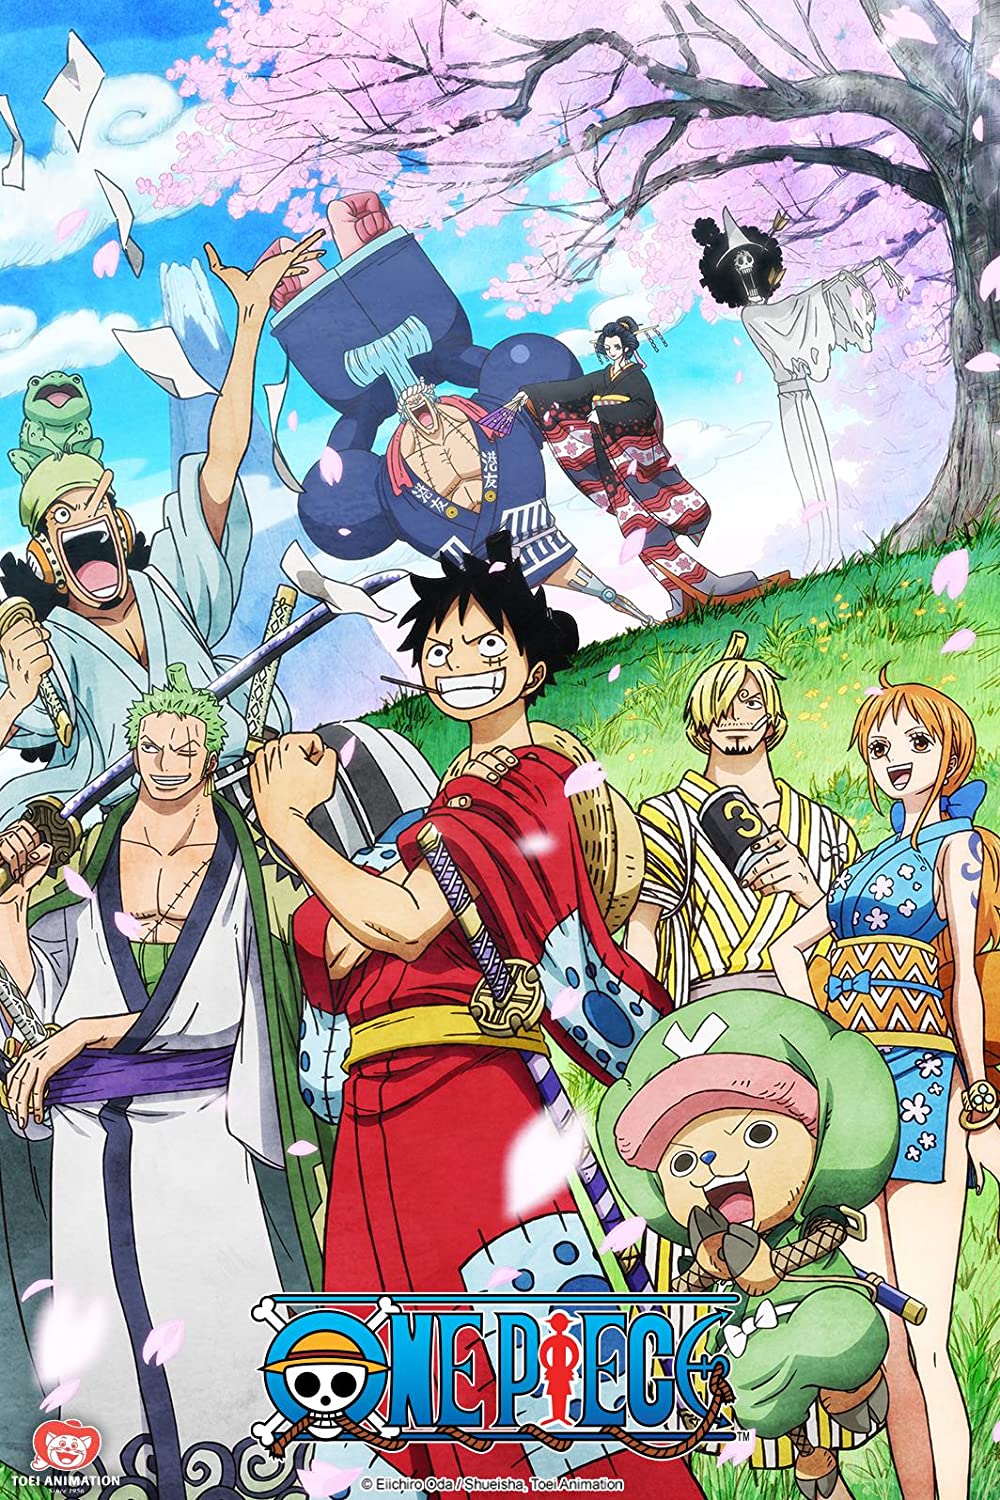 ดูหนังออนไลน์ฟรี One Piece Season 1 EP.2 วันพีช อิสท์บลู ซีซั่น 1 ตอนที่ 2